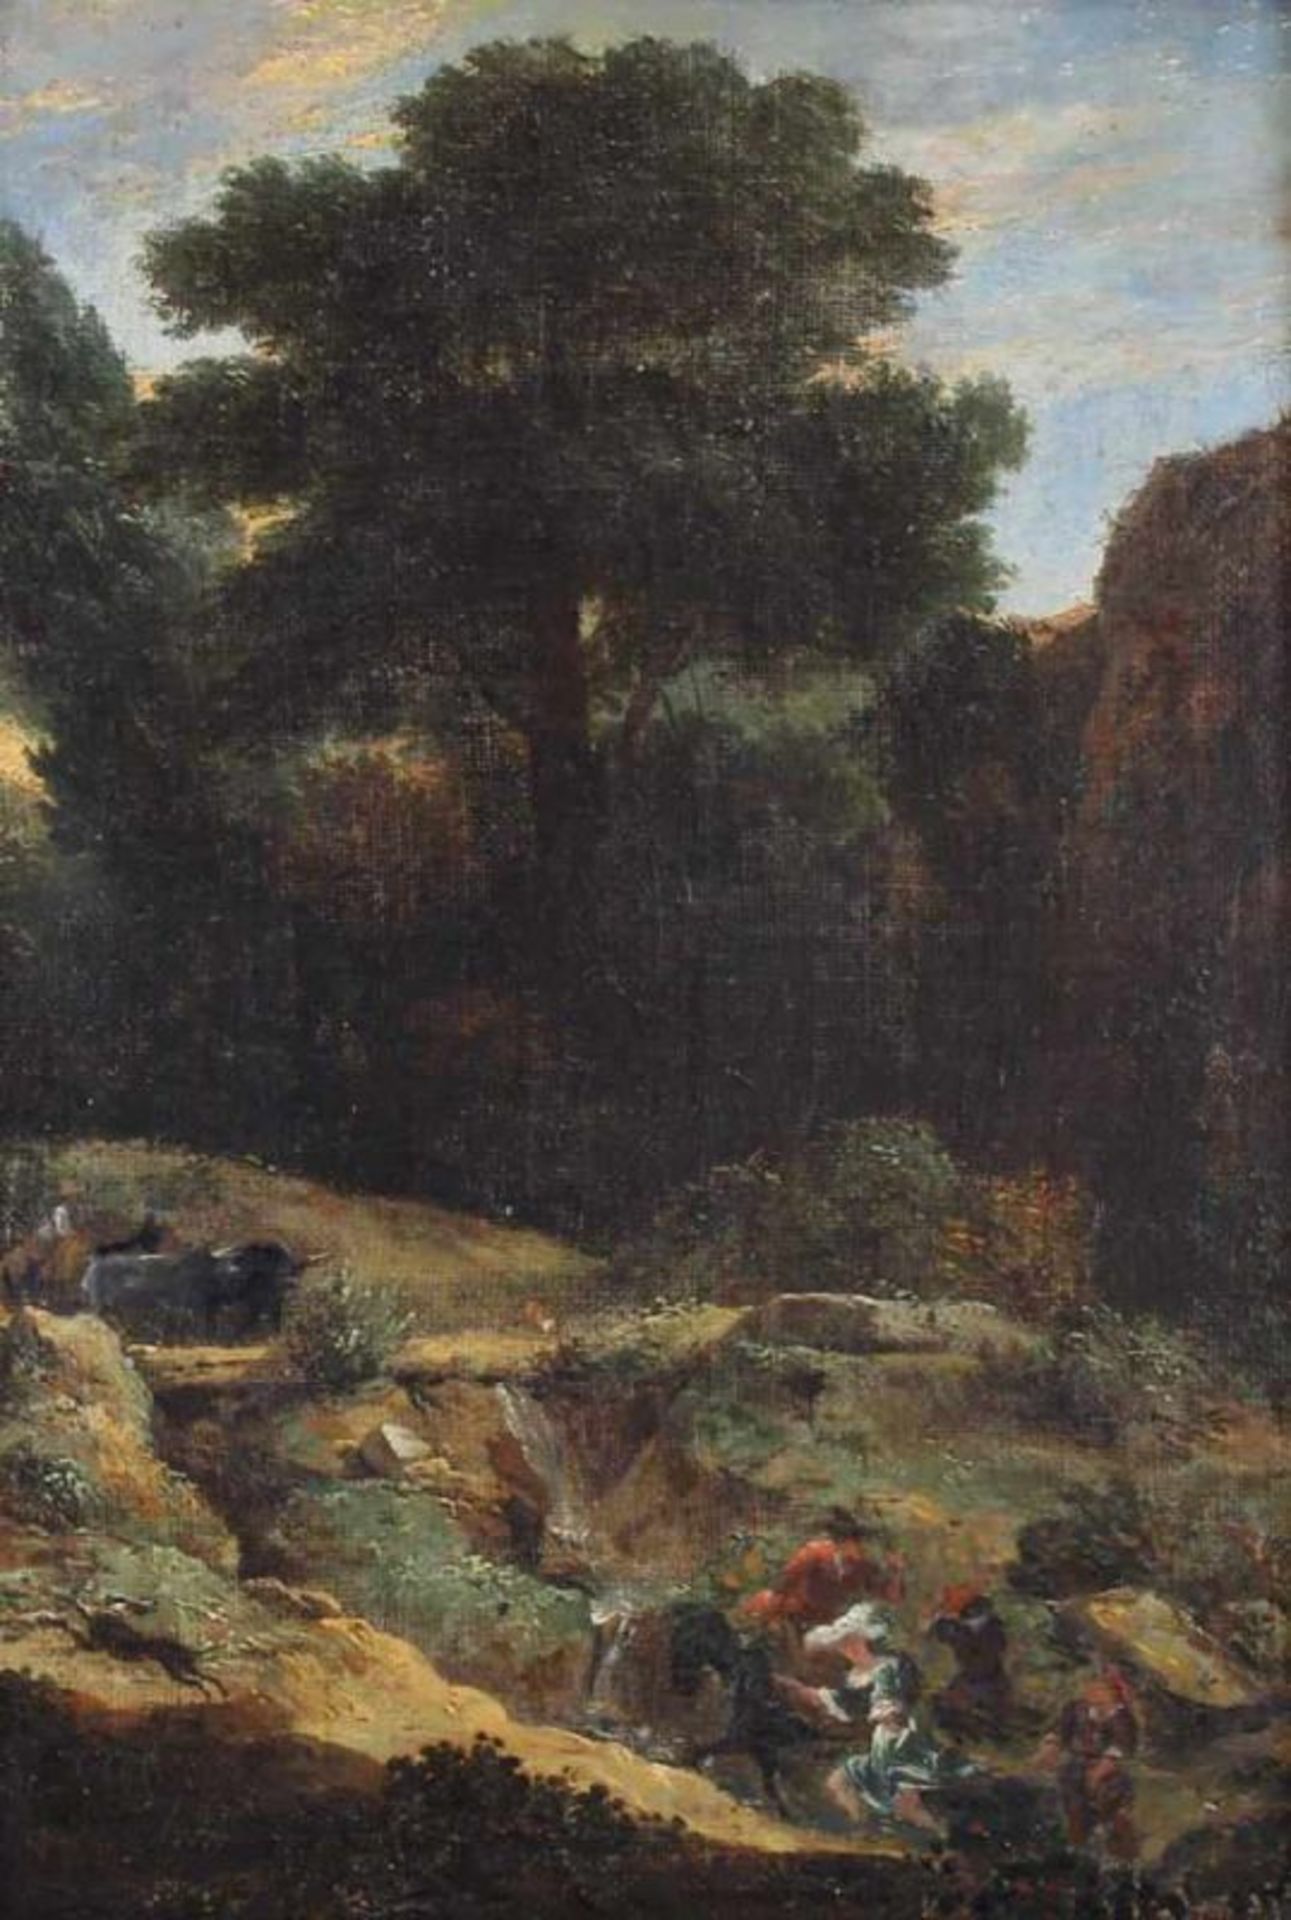 Unbekannter Maler (17./18. Jh.), "Reiter in hügeliger Landschaft", Öl auf Leinwand, 37 x 26 cm 20.00